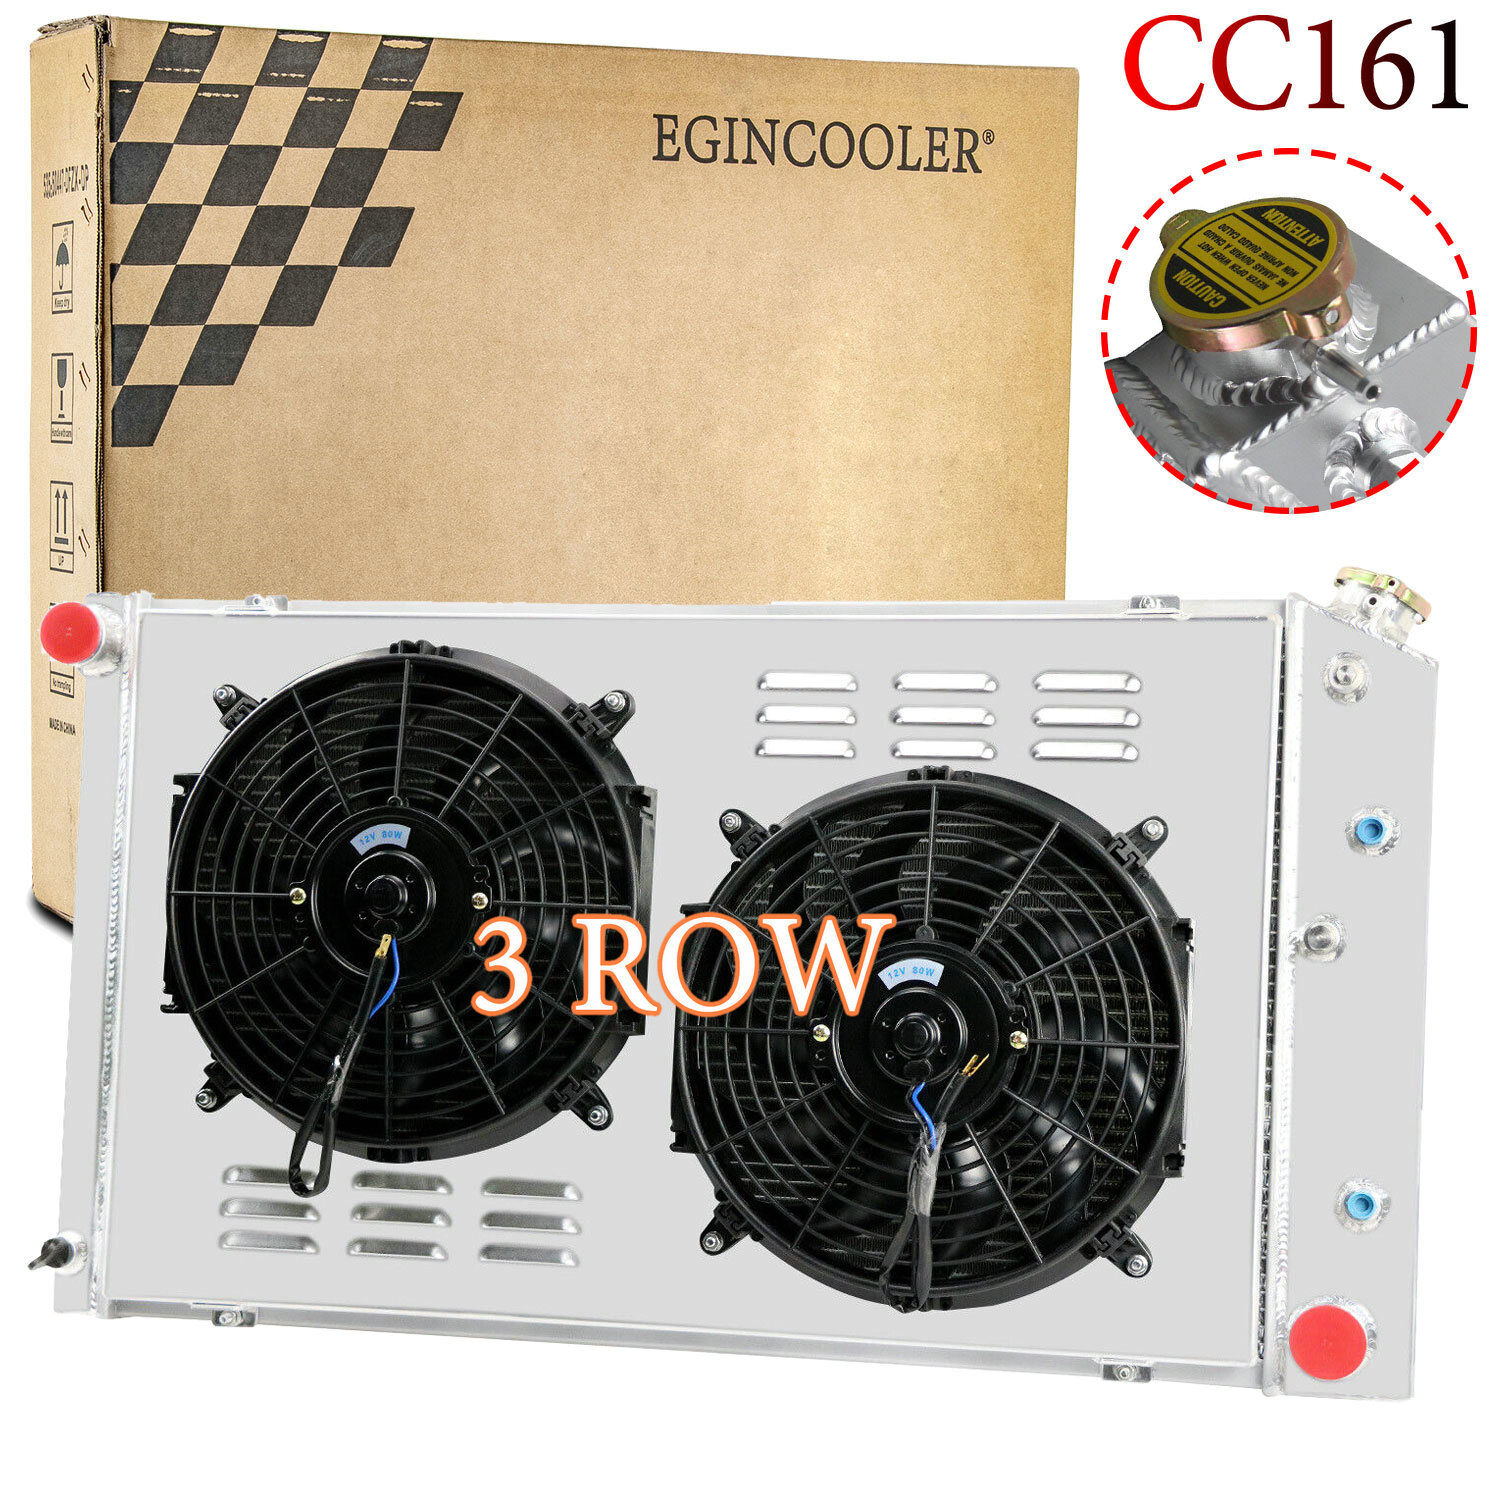 CC161 3 Row Radiator+Shroud Fan For 1973-1986 Chevy GMC C/K C10 C20 C30 K10 K20